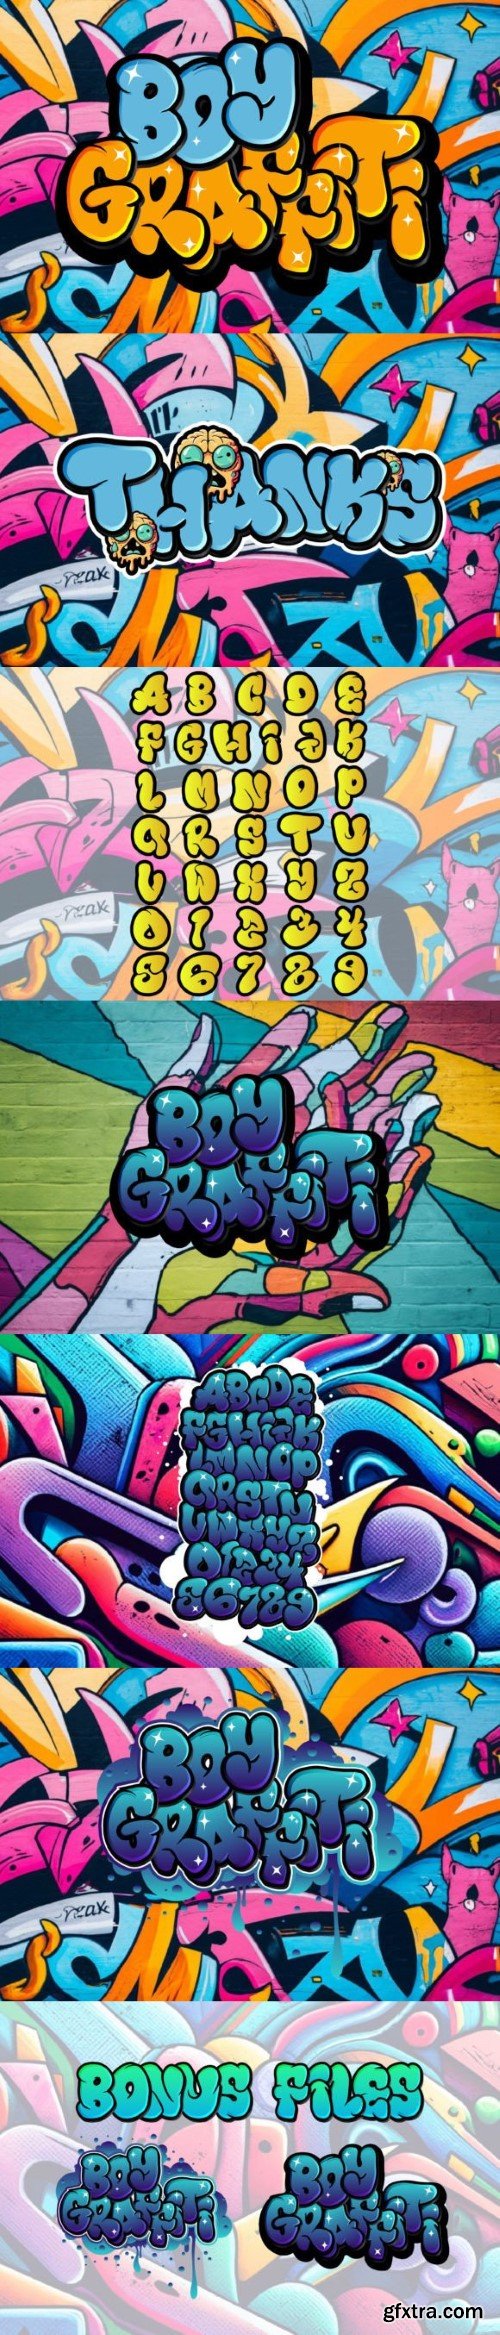 Boy Graffiti Font